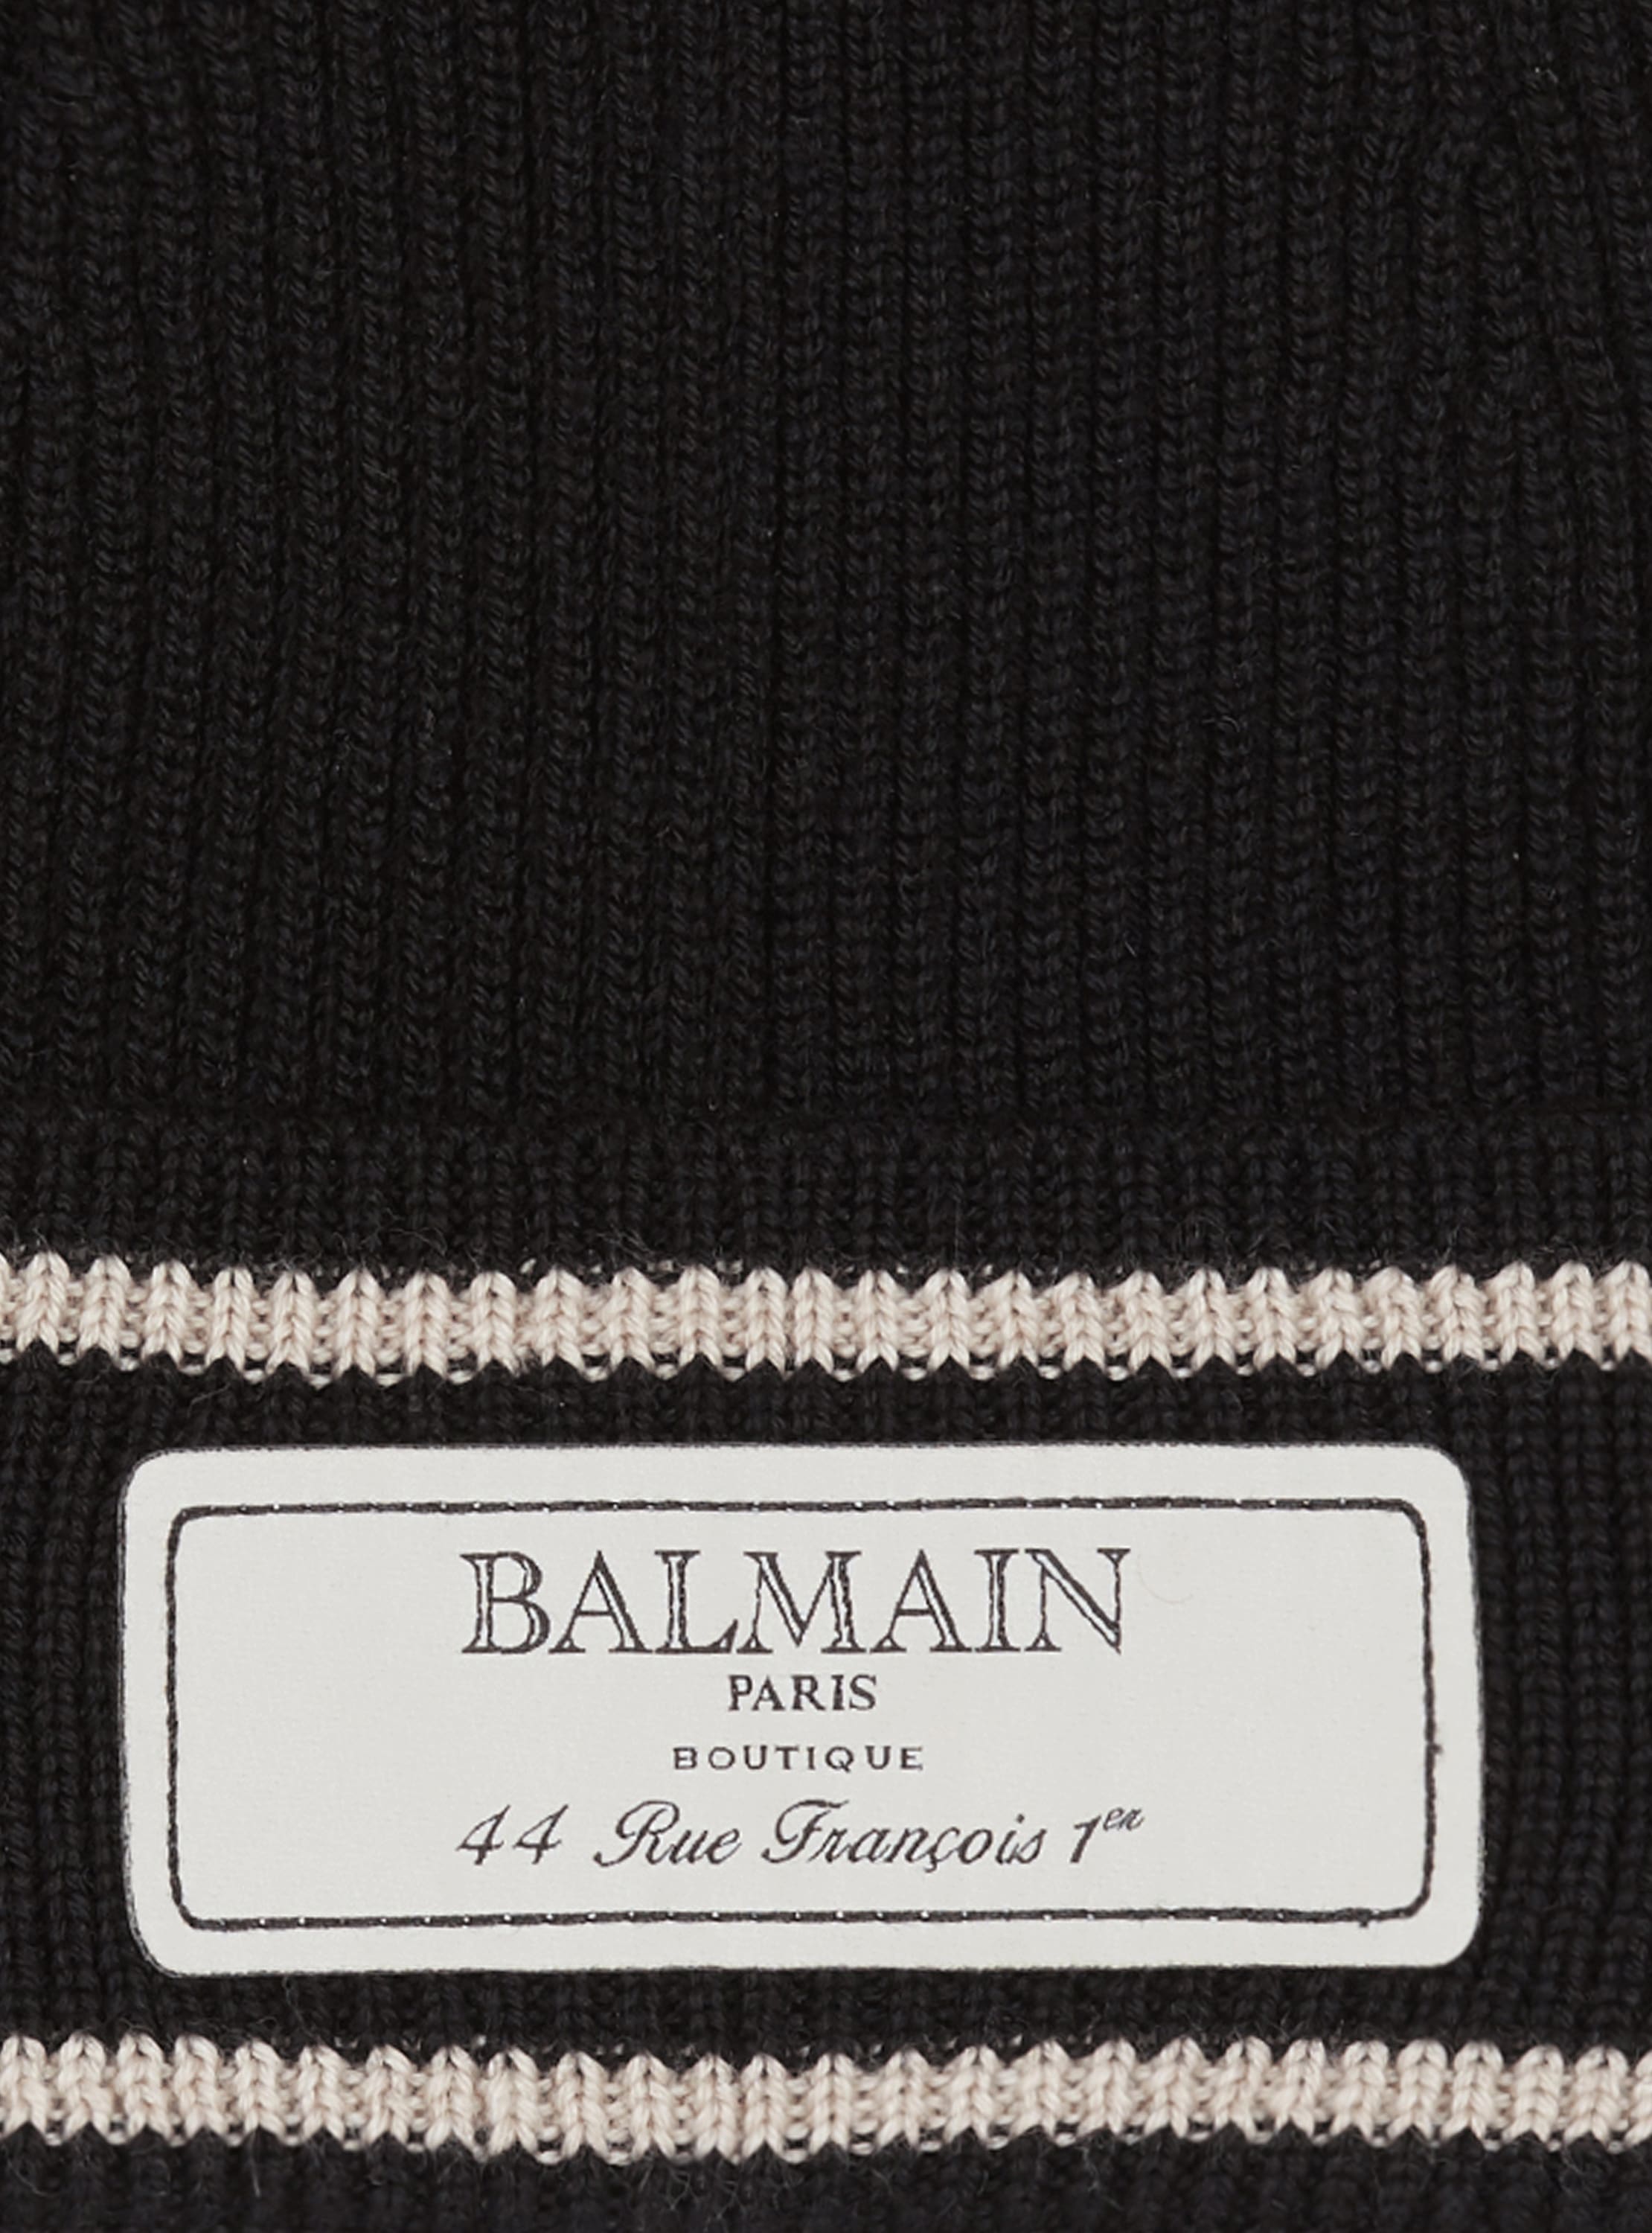 Mütze mit Balmain-Etikett